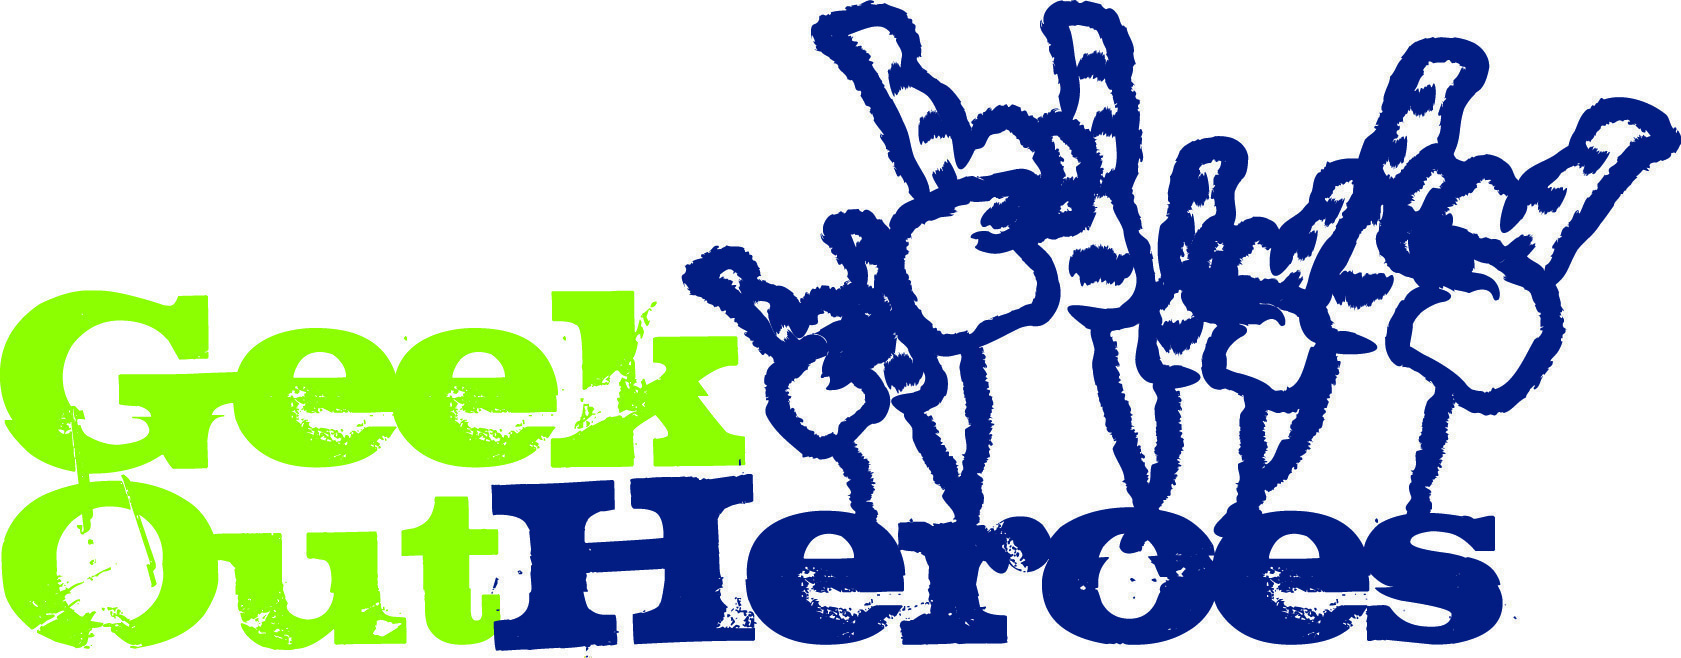 GeekOut Heroes